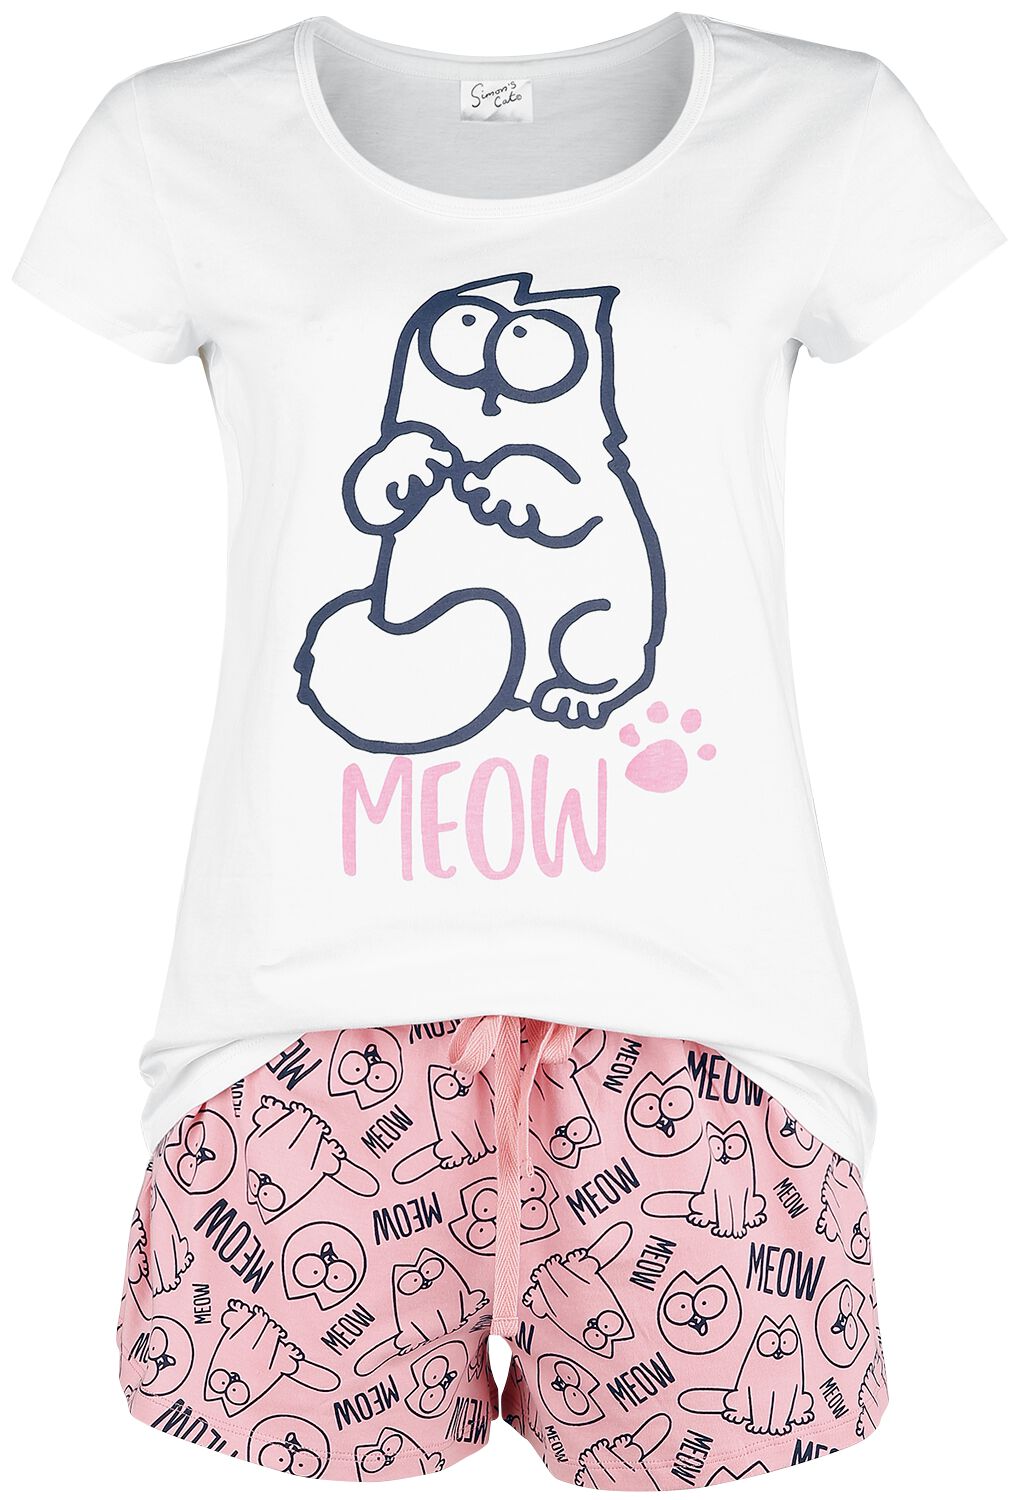 Simon' s Cat Meow Pyjama white pink